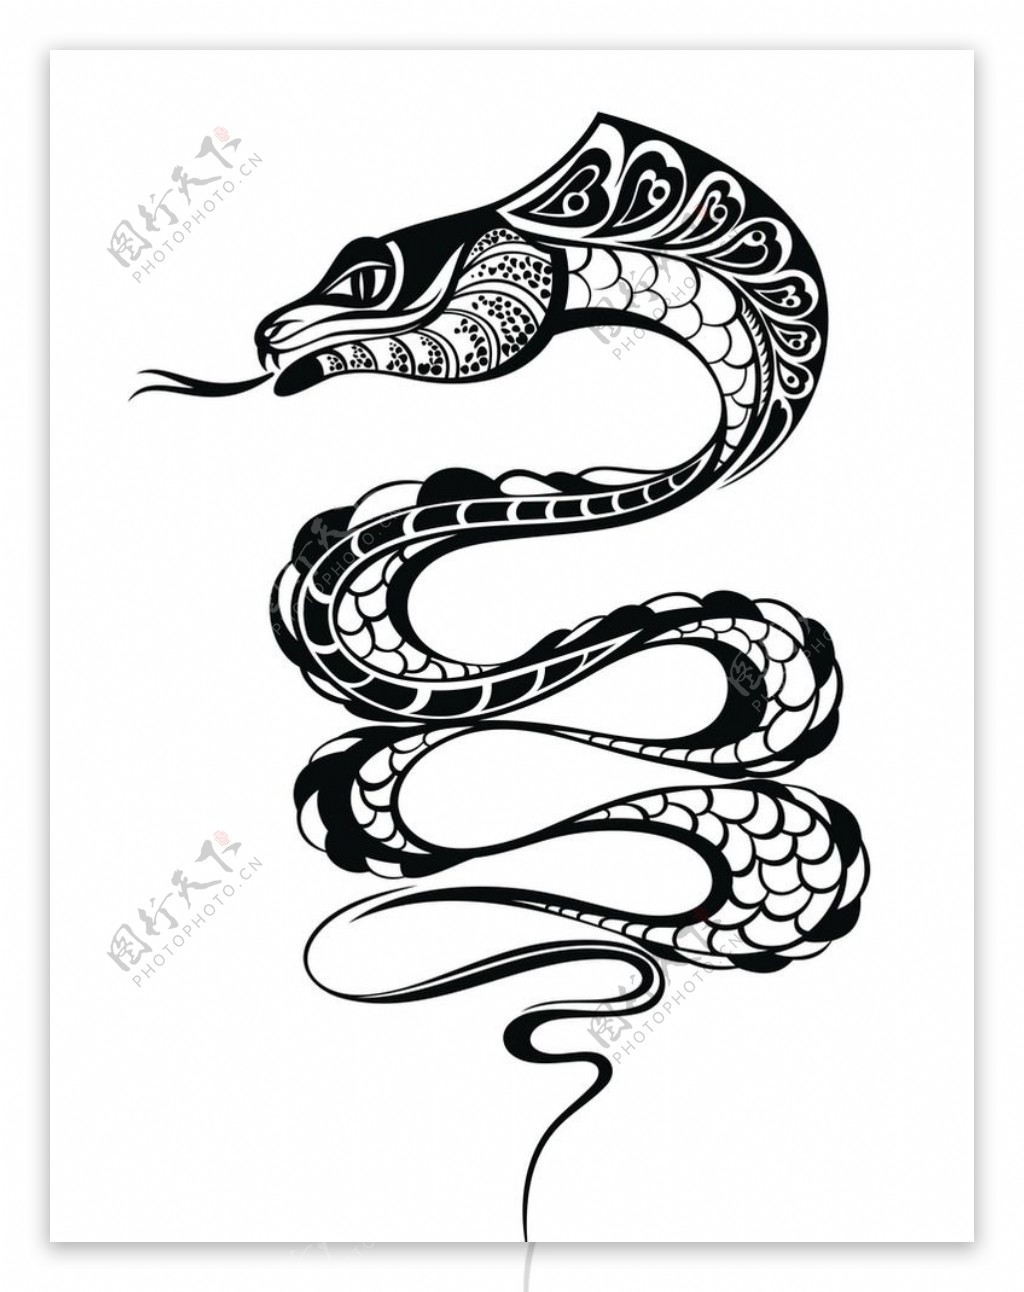 黑白剪影矢量素材图案蛇